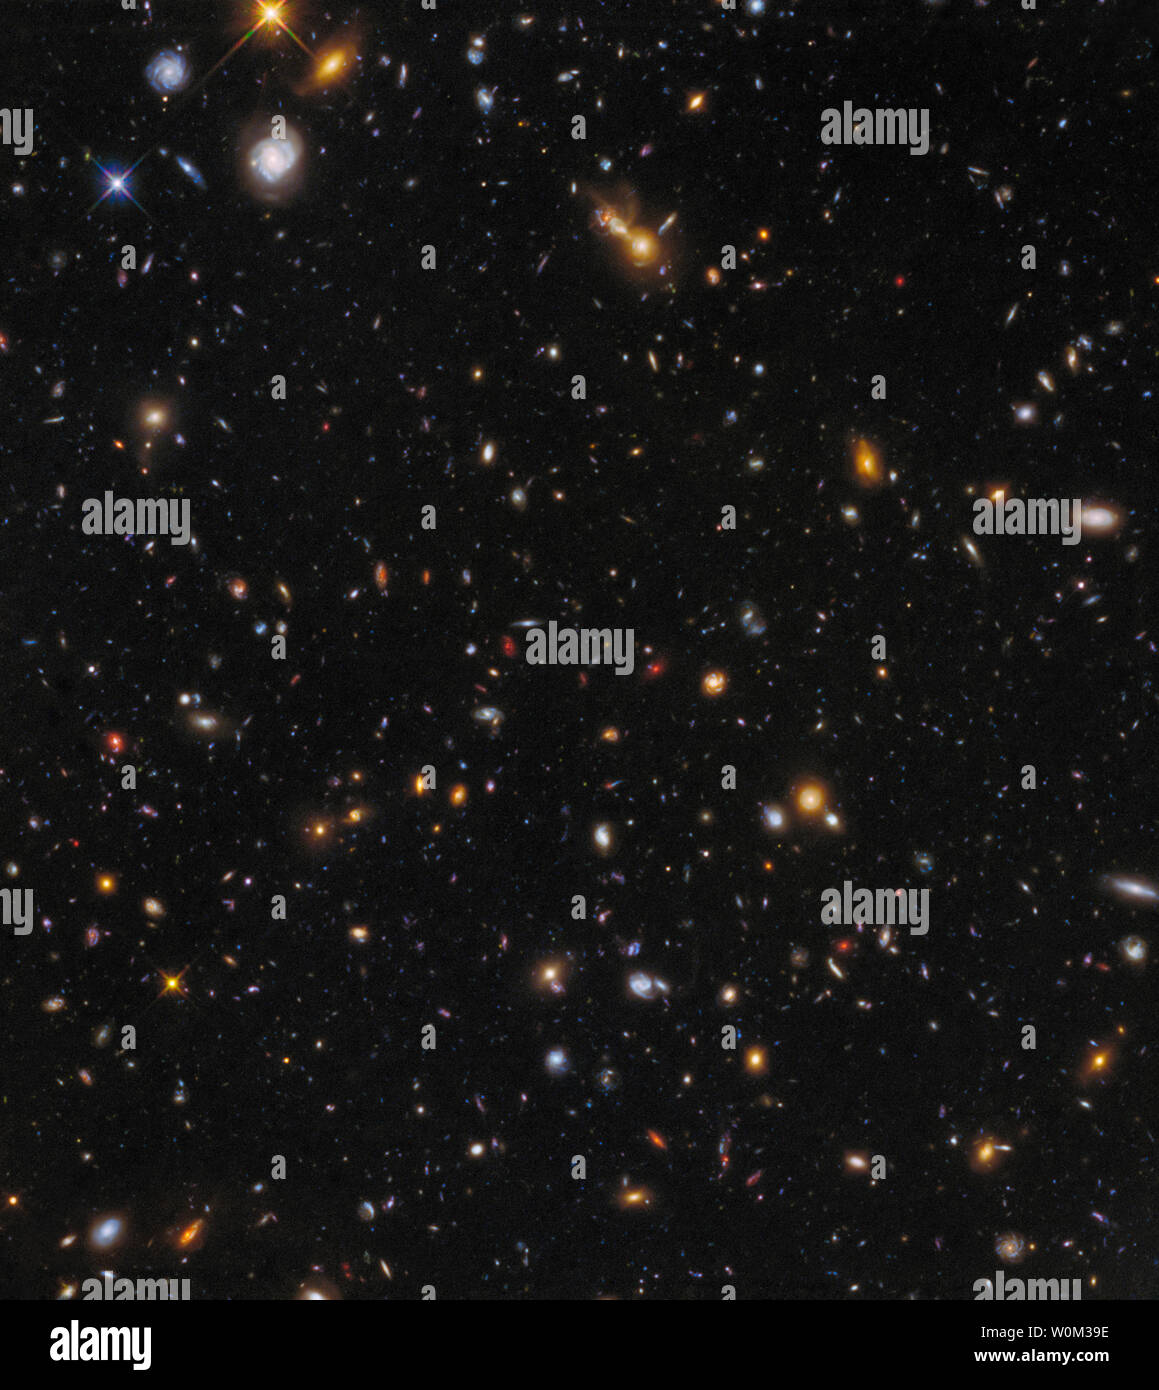 Bien qu'un oeil de Hubble observait sa cible principale, le massif des amas de galaxies Abell 370, le deuxième œil - un autre instrument - était à la recherche à une partie du ciel juste à côté de la grappe, comme on le voit dans cette image publié le 4 mai 2017. Bien que moins spectaculaire que la lumière des clusters, ces champs parallèles sont aussi profond que les images principales et peuvent même entrer en concurrence avec le célèbre Champ Profond de Hubble en ce qui concerne la profondeur. Ils sont donc un outil précieux pour l'étude de l'évolution des galaxies depuis les premières époques de l'univers jusqu'à aujourd'hui. Photo de la NASA/ESA/TVH Champs Frontière/UPI Banque D'Images